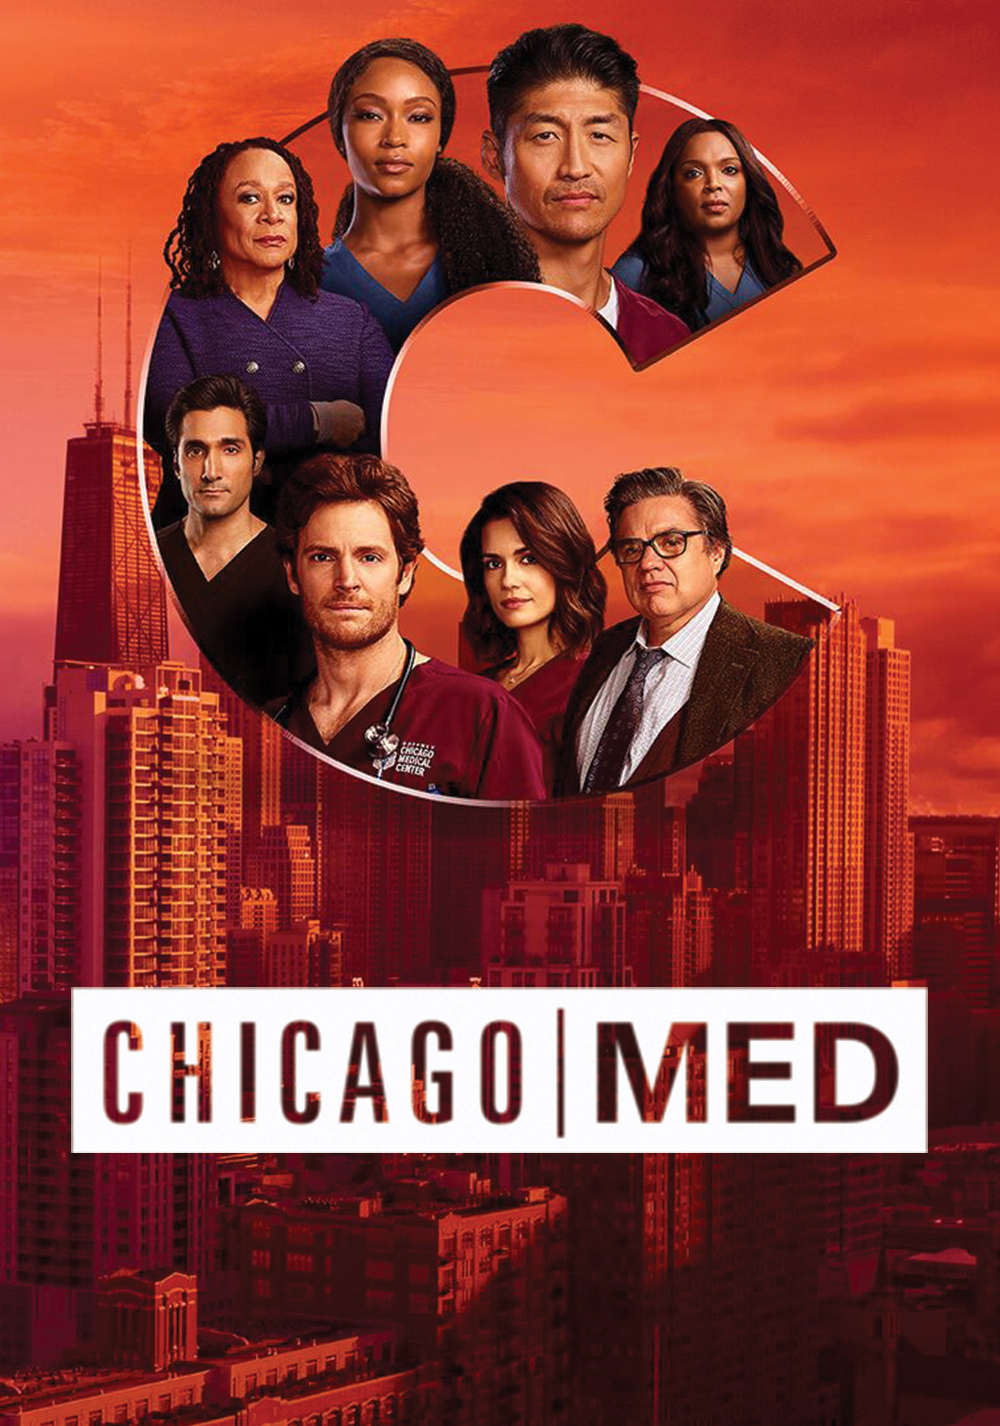 Chicago Med S06E01 t/m S06E07 NLSubs